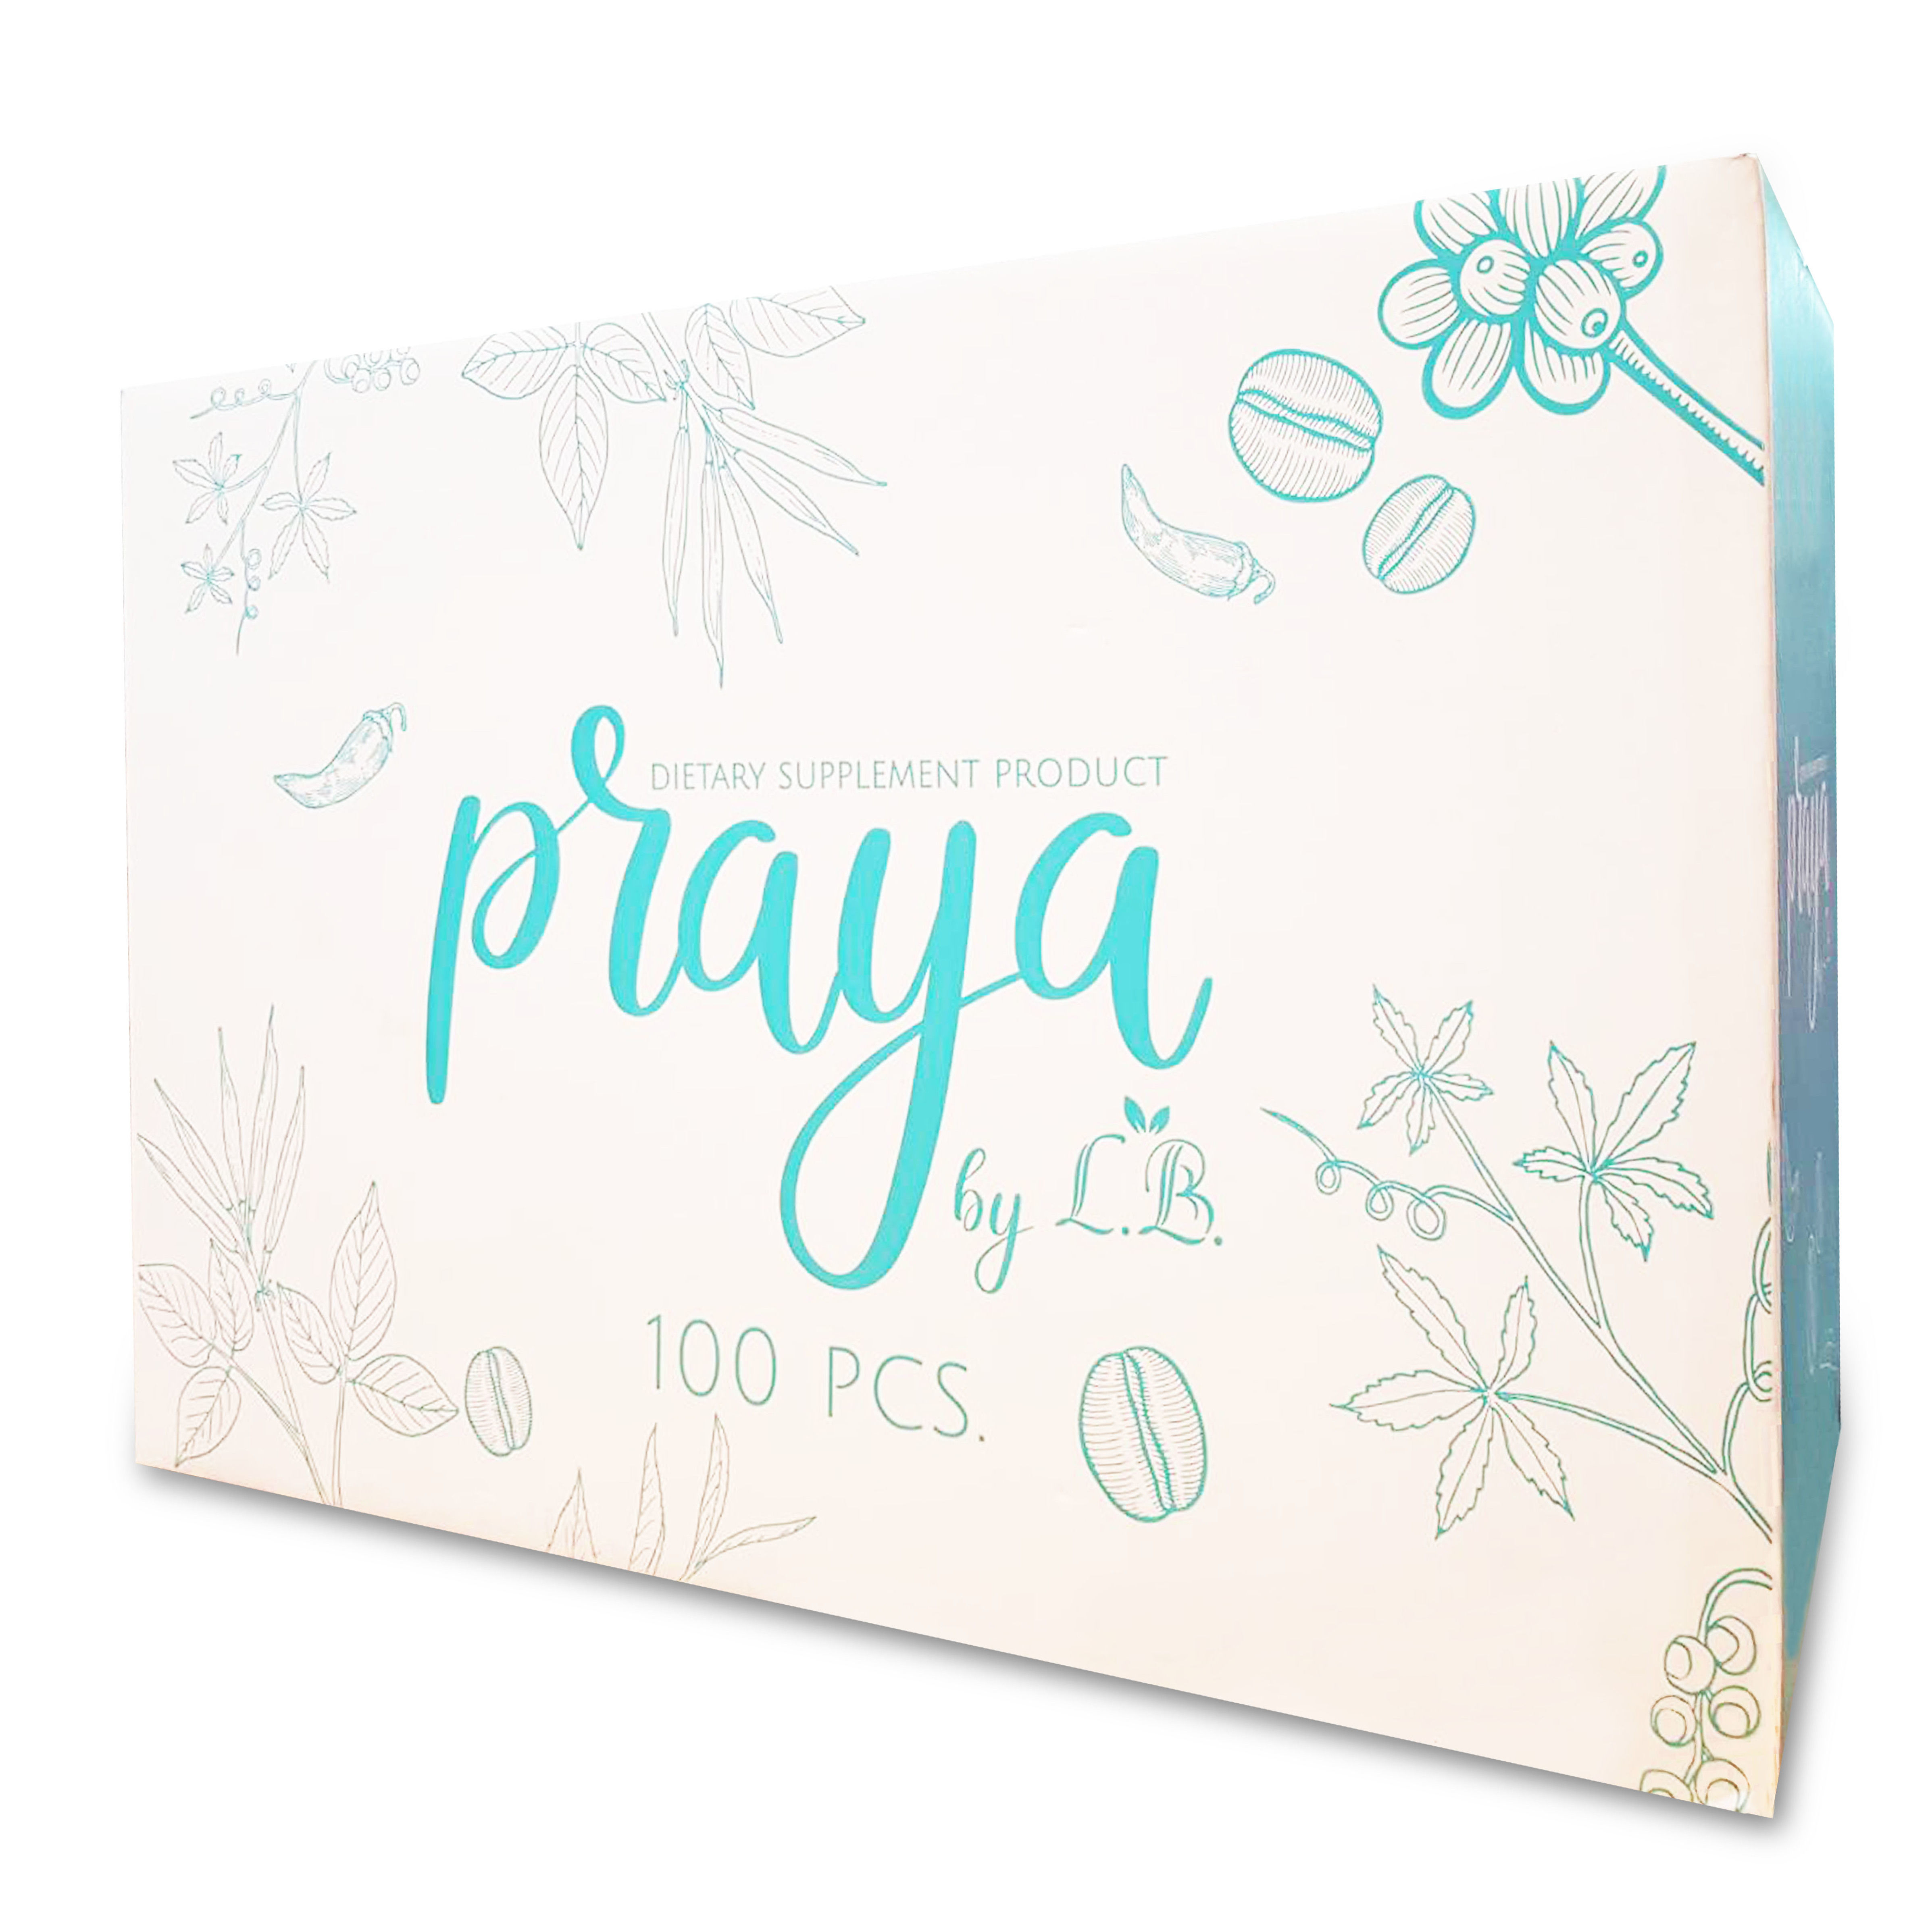 กล่องอาหารเสริม 
Brand Praya บรรจุ 100 ชิ้น
ขนาด 25.4x62x42cm.